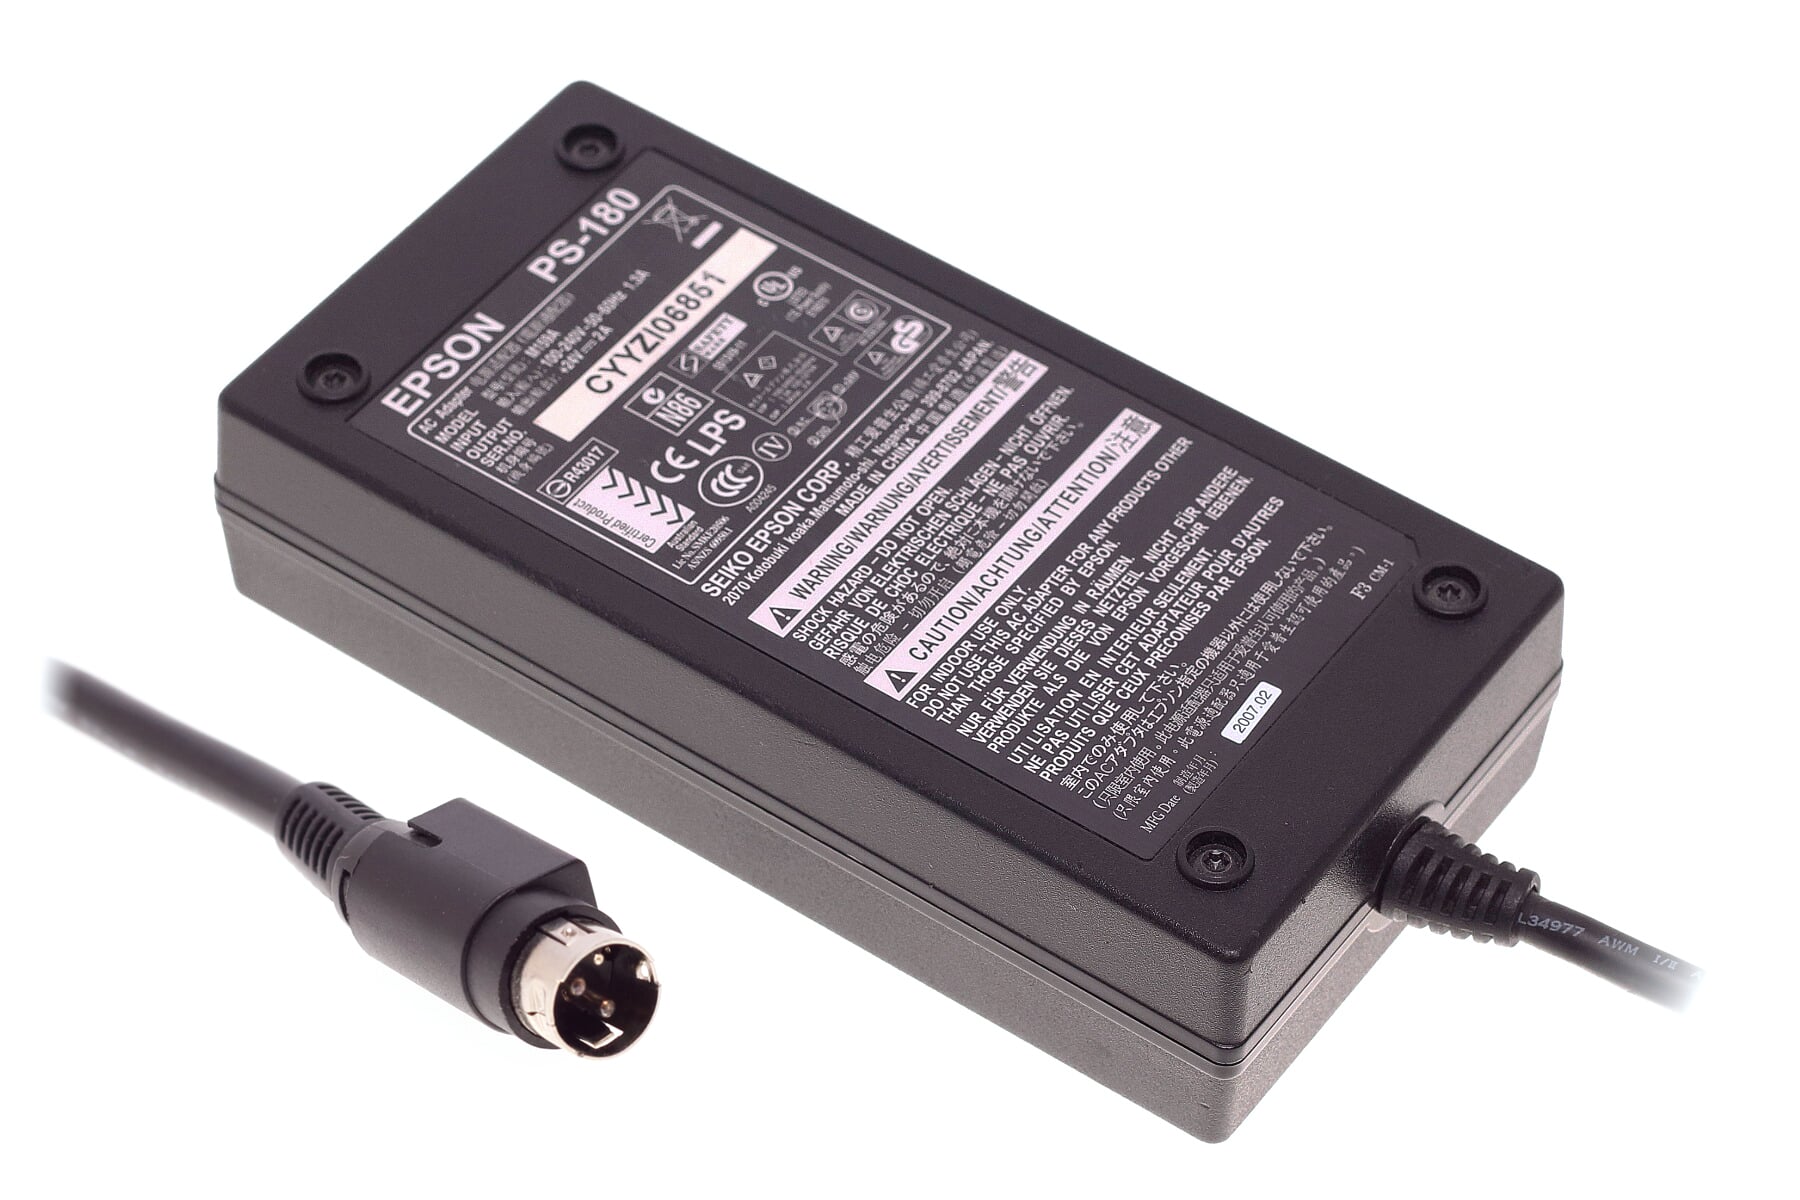 Netzteil für Epson Bondrucker kompatibel zu PS-180 24V 2A 